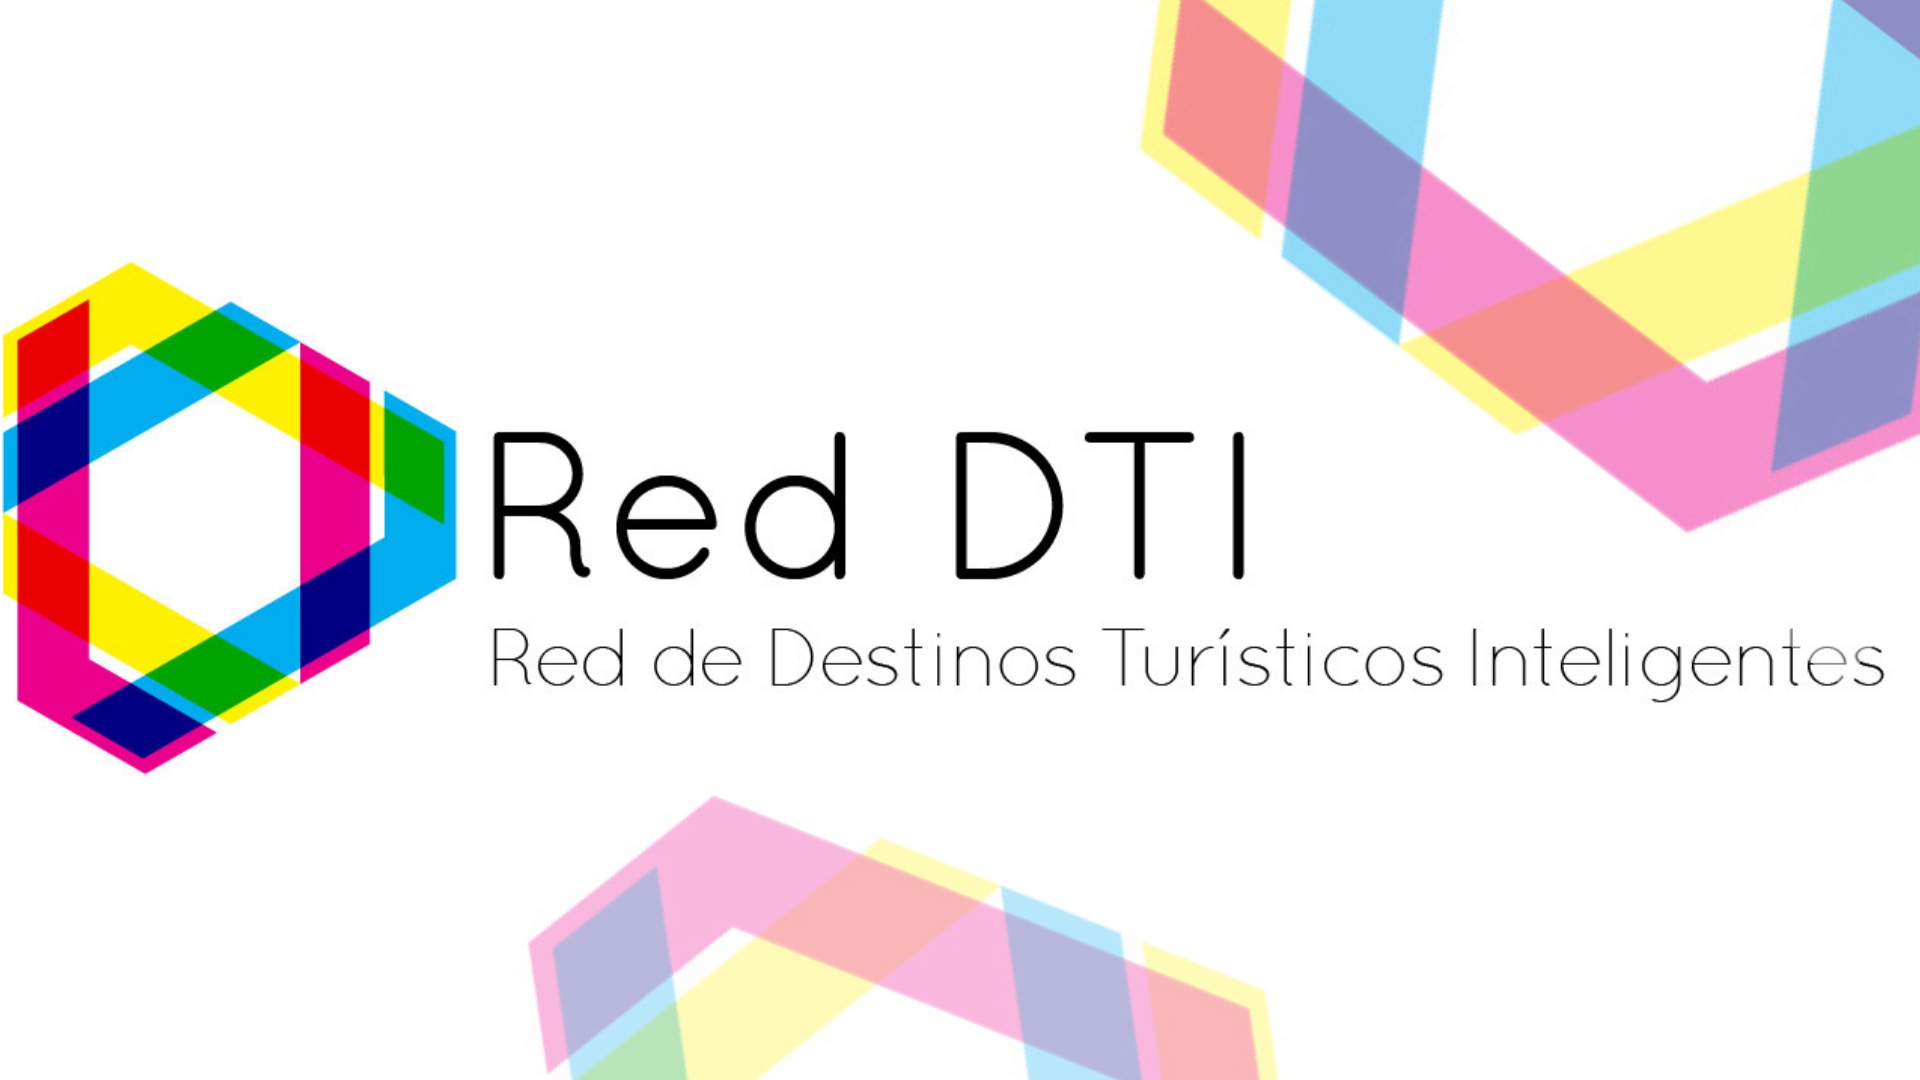 ¡Formamos parte de la Red DTI!